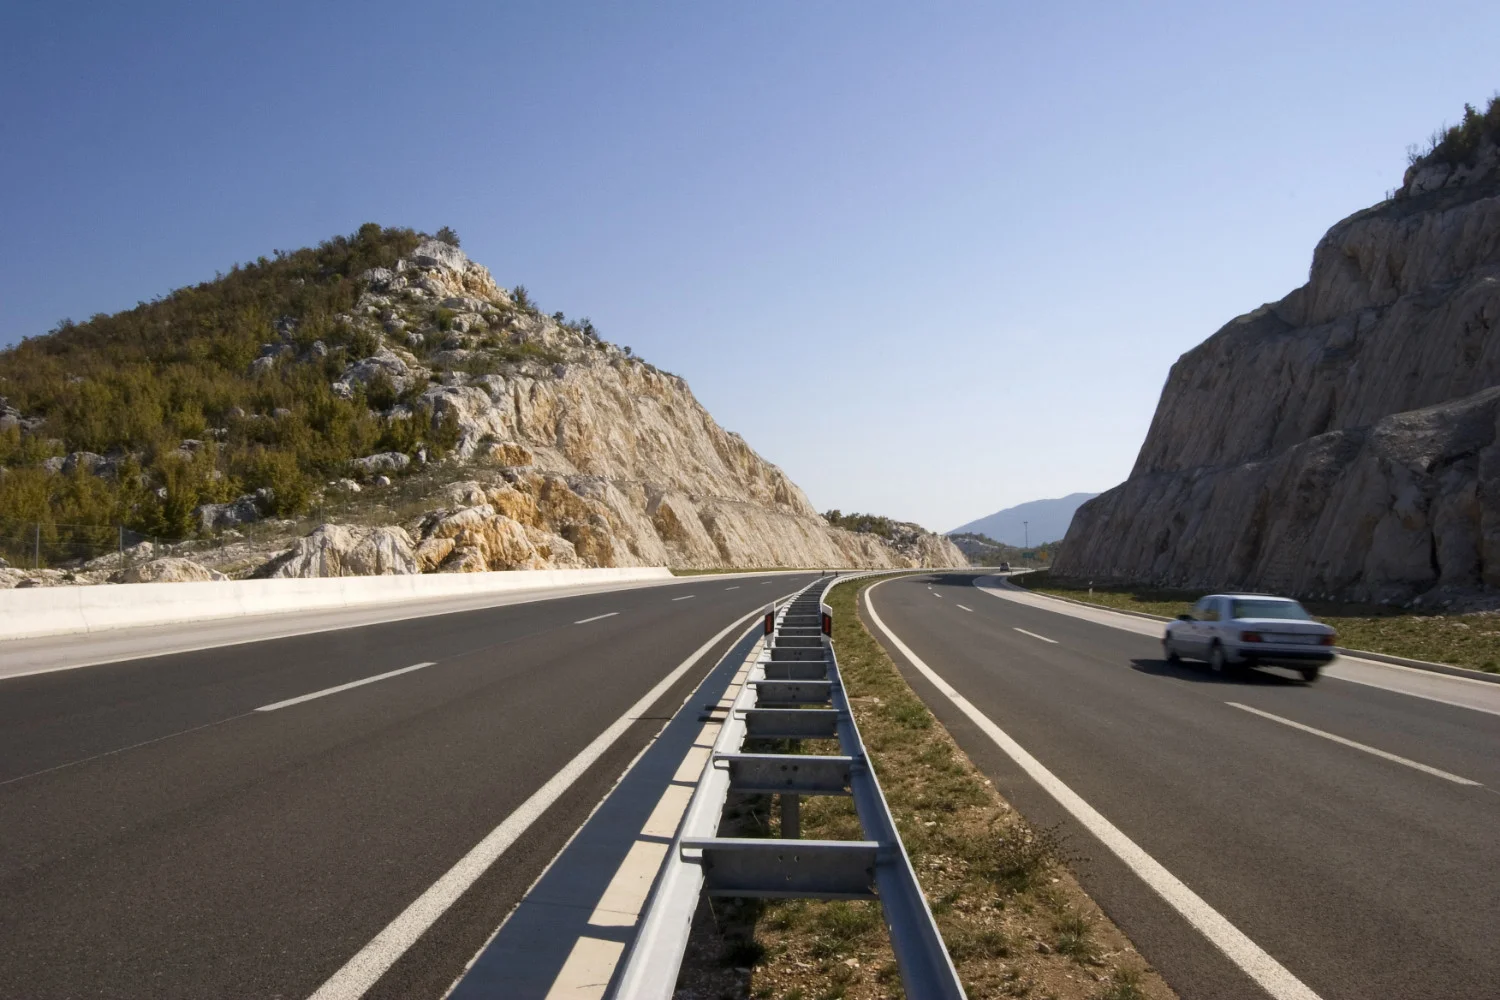 Hrvatski autoputevi su poznati po visokim ograničenjima brzine. Ograničenje brzine na autoputu u Hrvatskoj je 130 km/h.